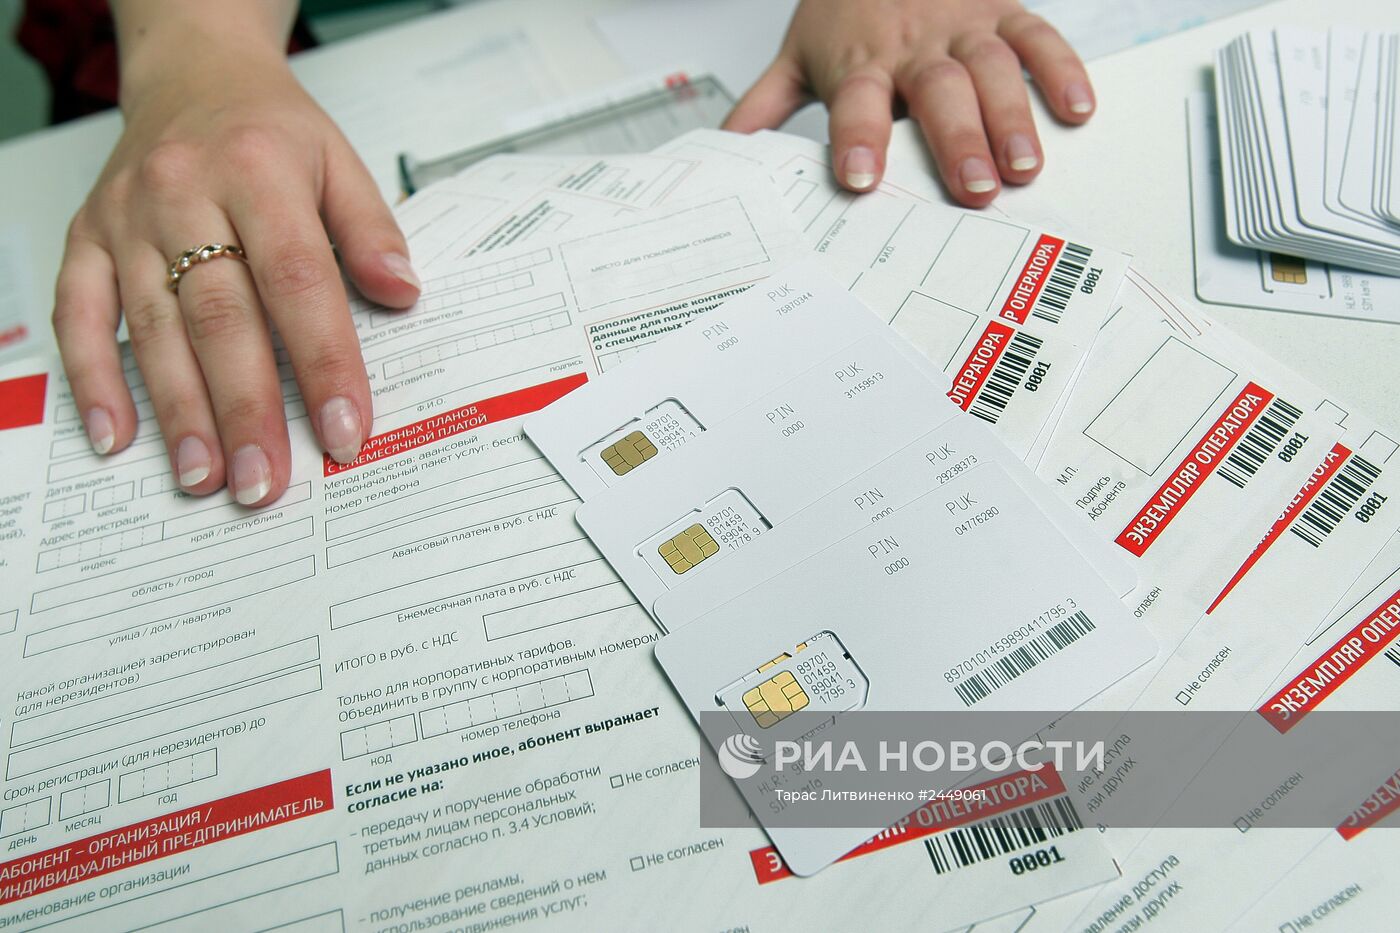 В Крыму начались продажи российских SIM-карт с номерами в коде "+7" сотового оператора МТС